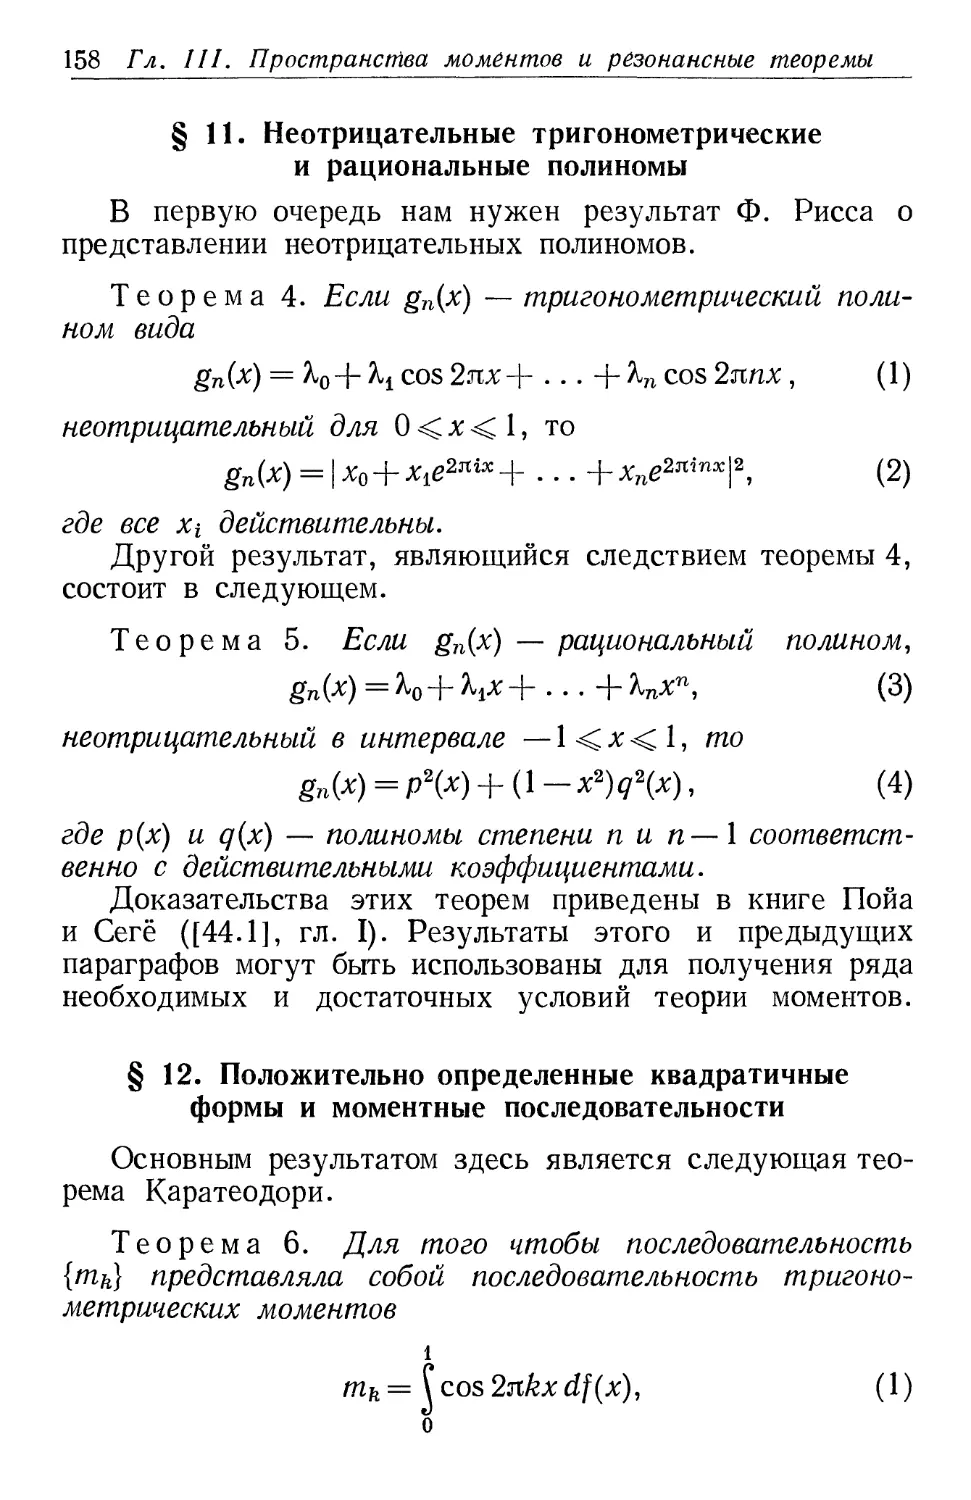 § 11. Неотрицательные тригонометрические и рациональные полиномы
§ 12. Положительно определенные квадратичные формы и моментные последовательности